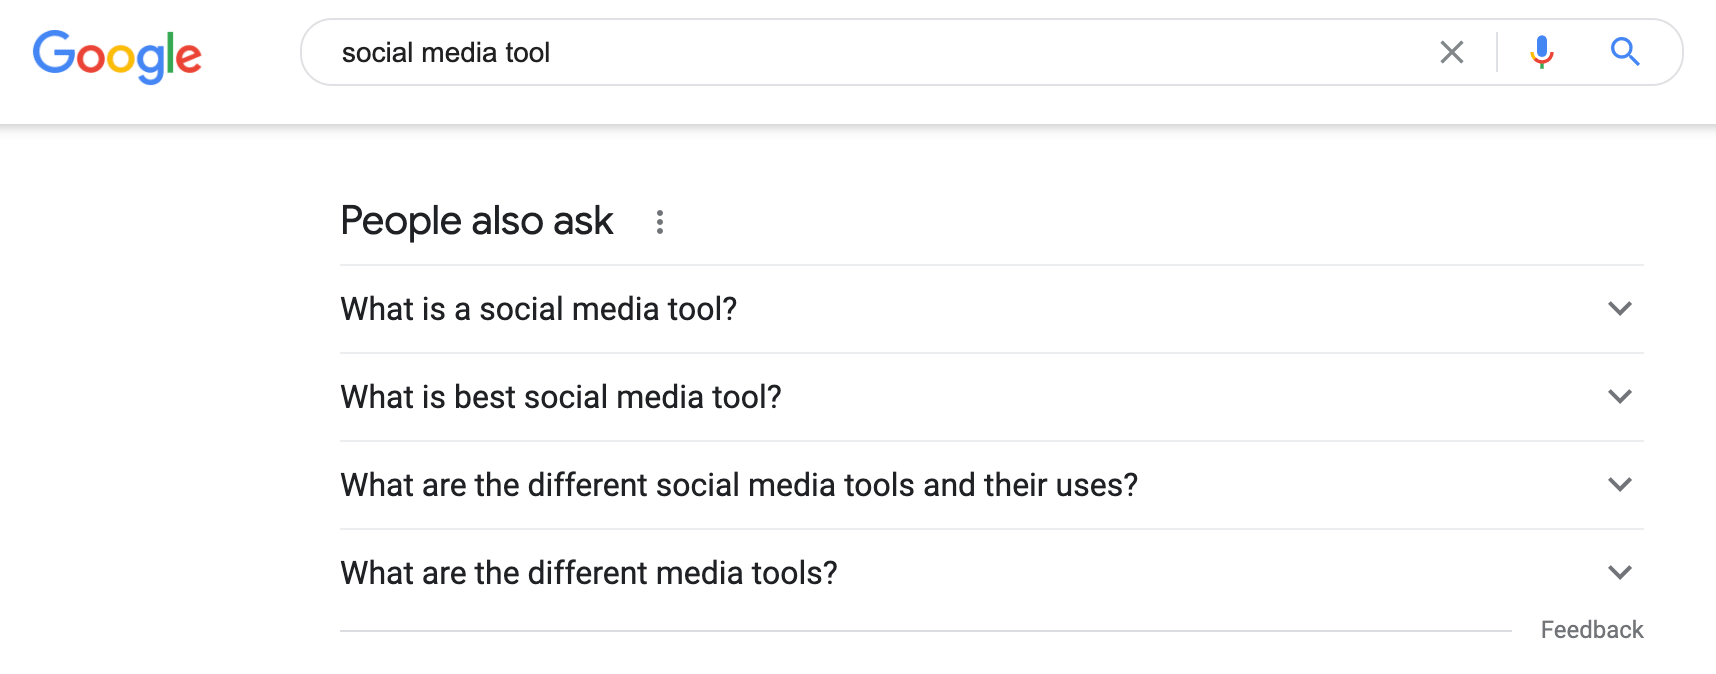 هنگام جستجوی ابزارهای رسانه های اجتماعی برای ایجاد نمایه مخاطبان، بخش The People also Ask در Google.